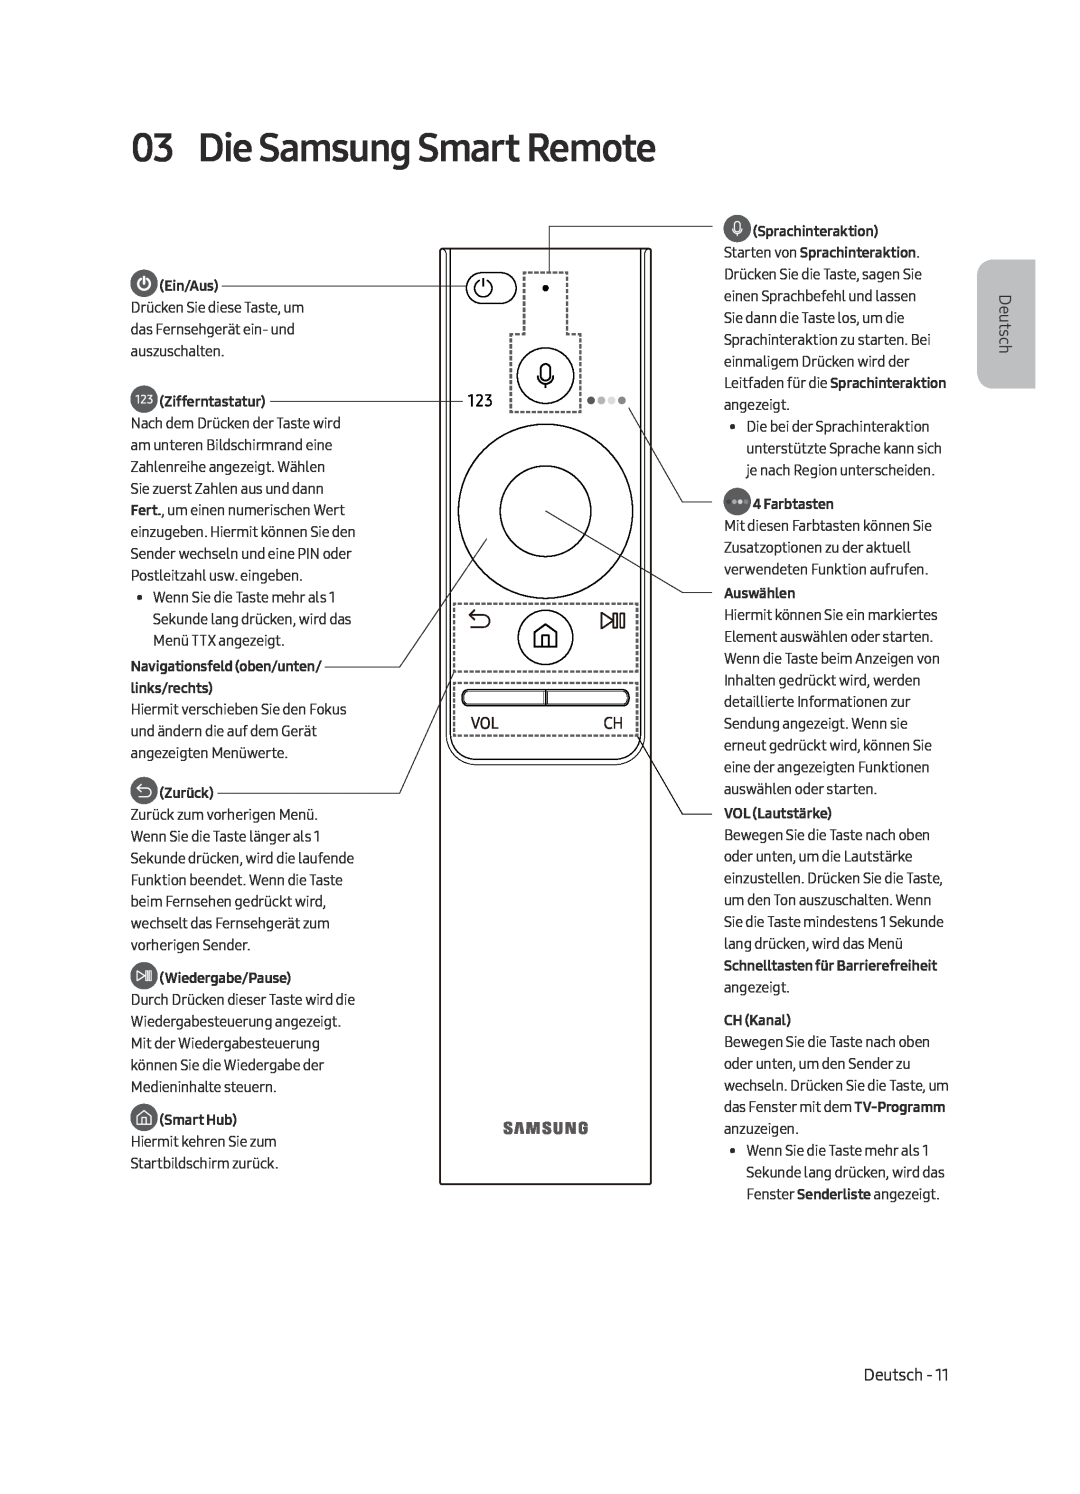 Samsung UE65MU6450UXZG manual Die Samsung Smart Remote, Ein/Aus, Zifferntastatur, Navigationsfeld oben/unten/ links/rechts 